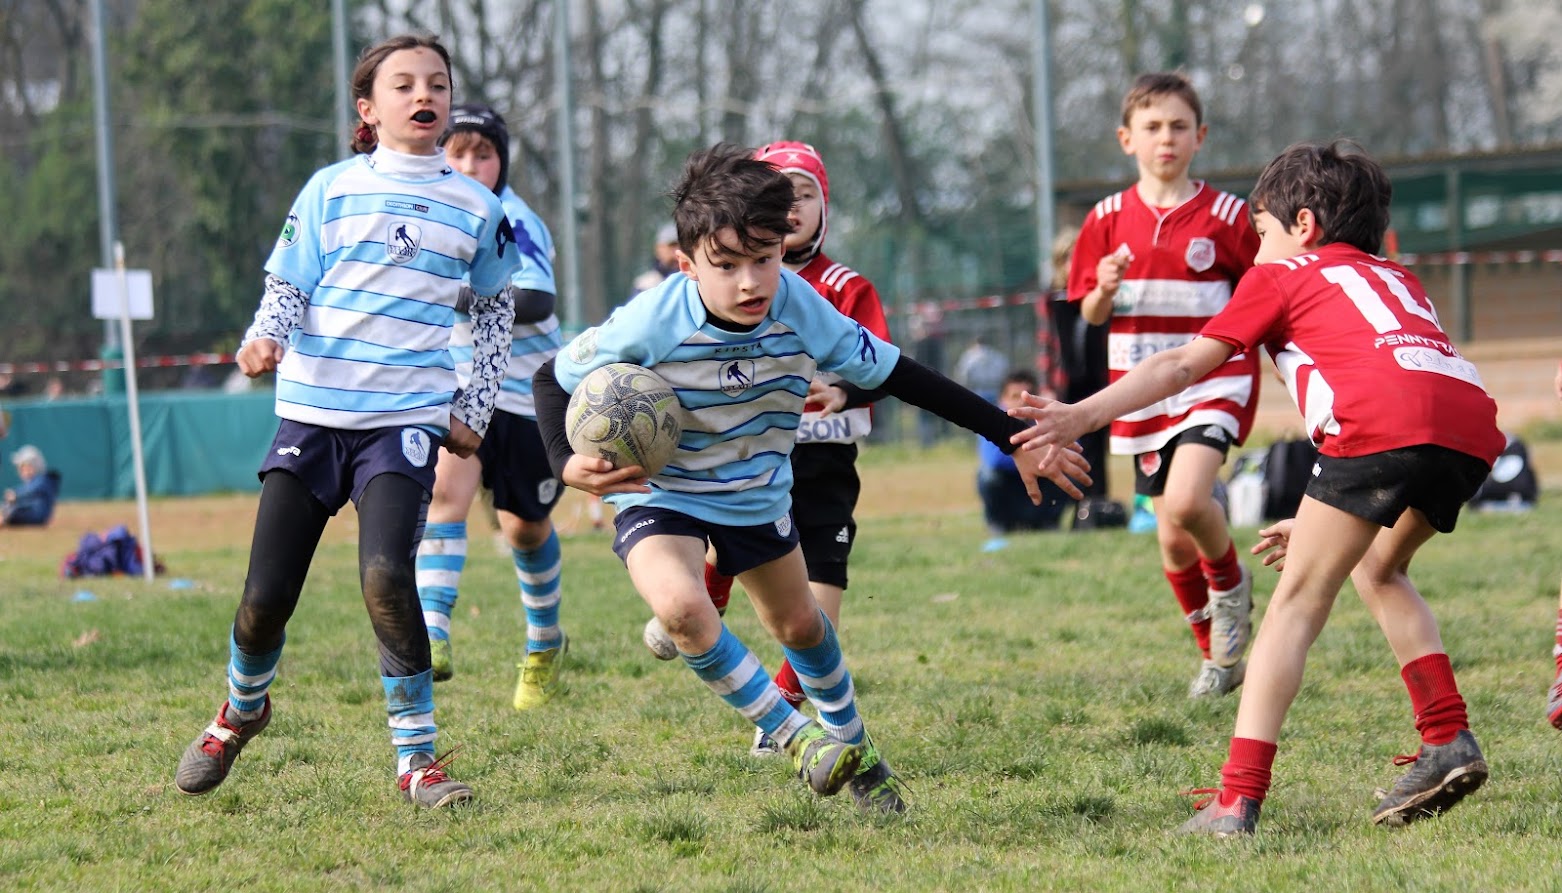 Festa del Rugby Settimo Milanese